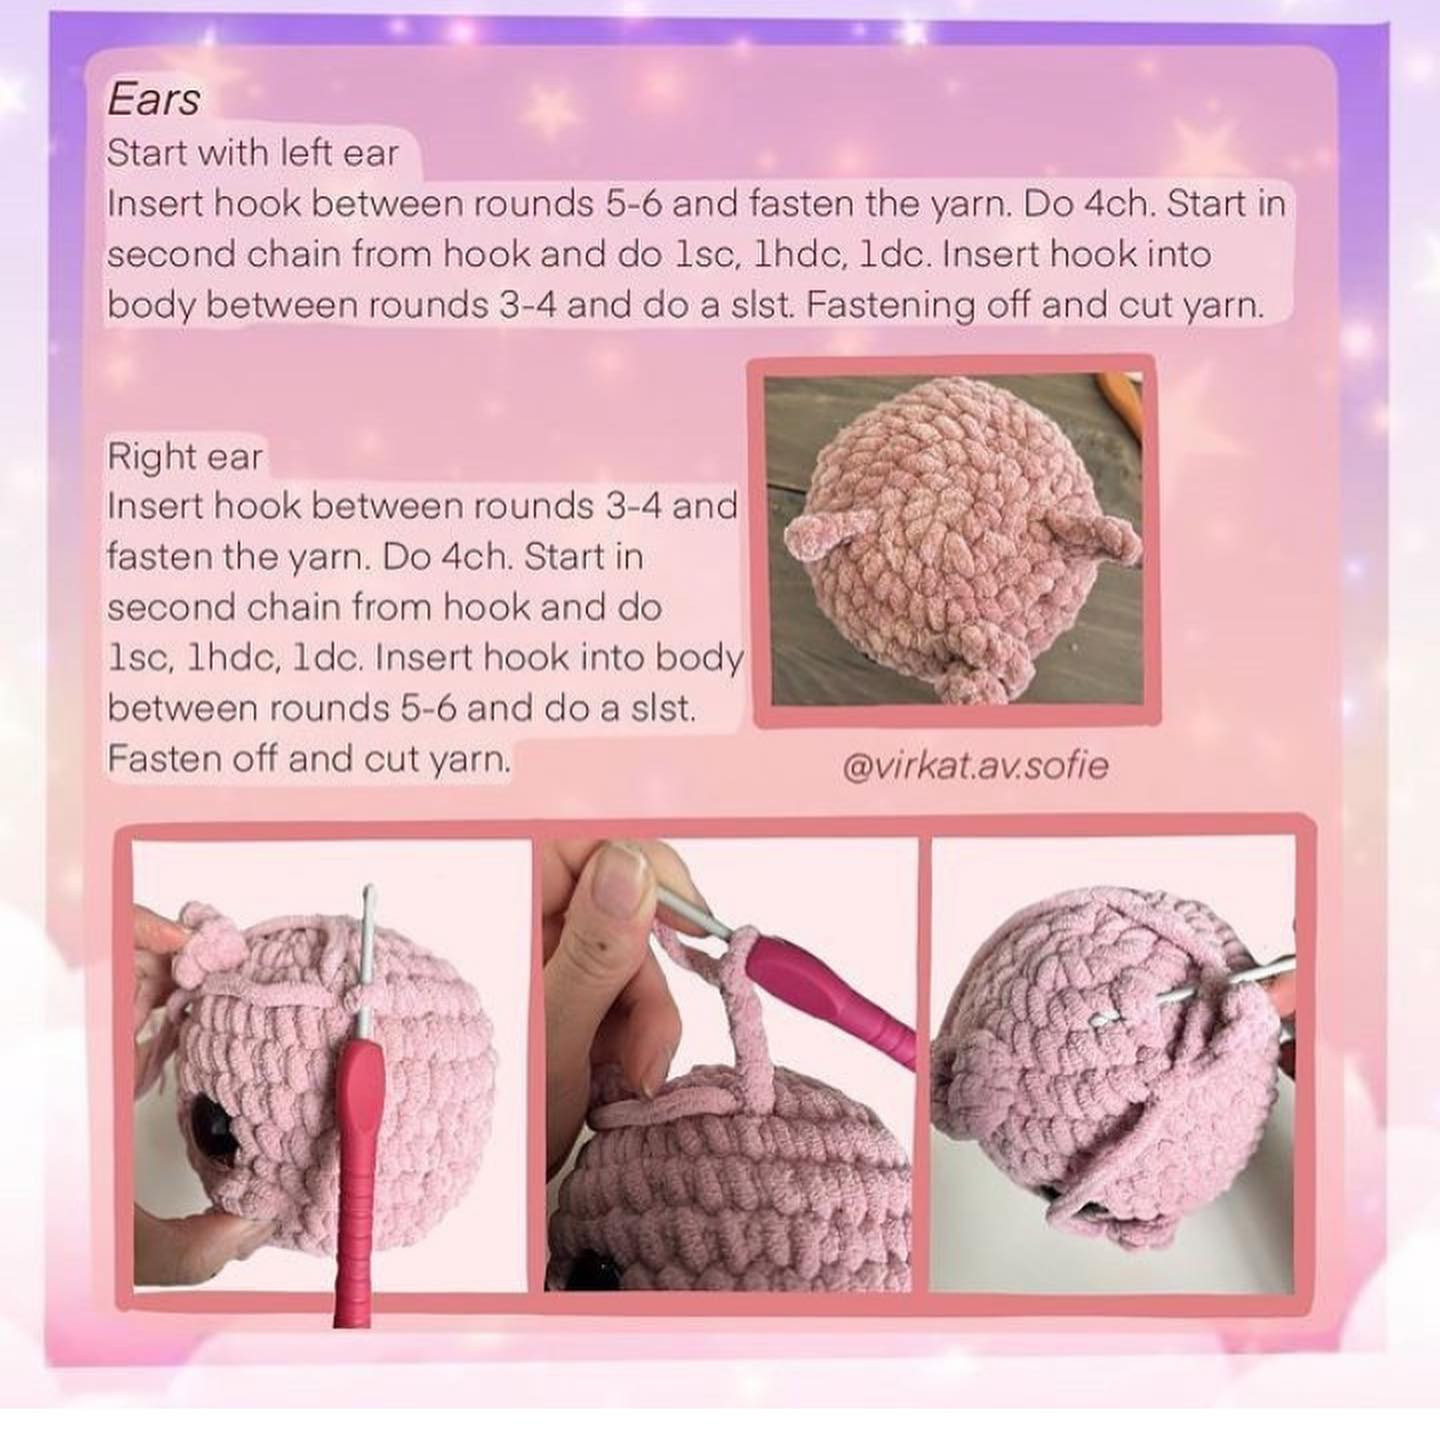 mini jigglypuff free crochet pattern